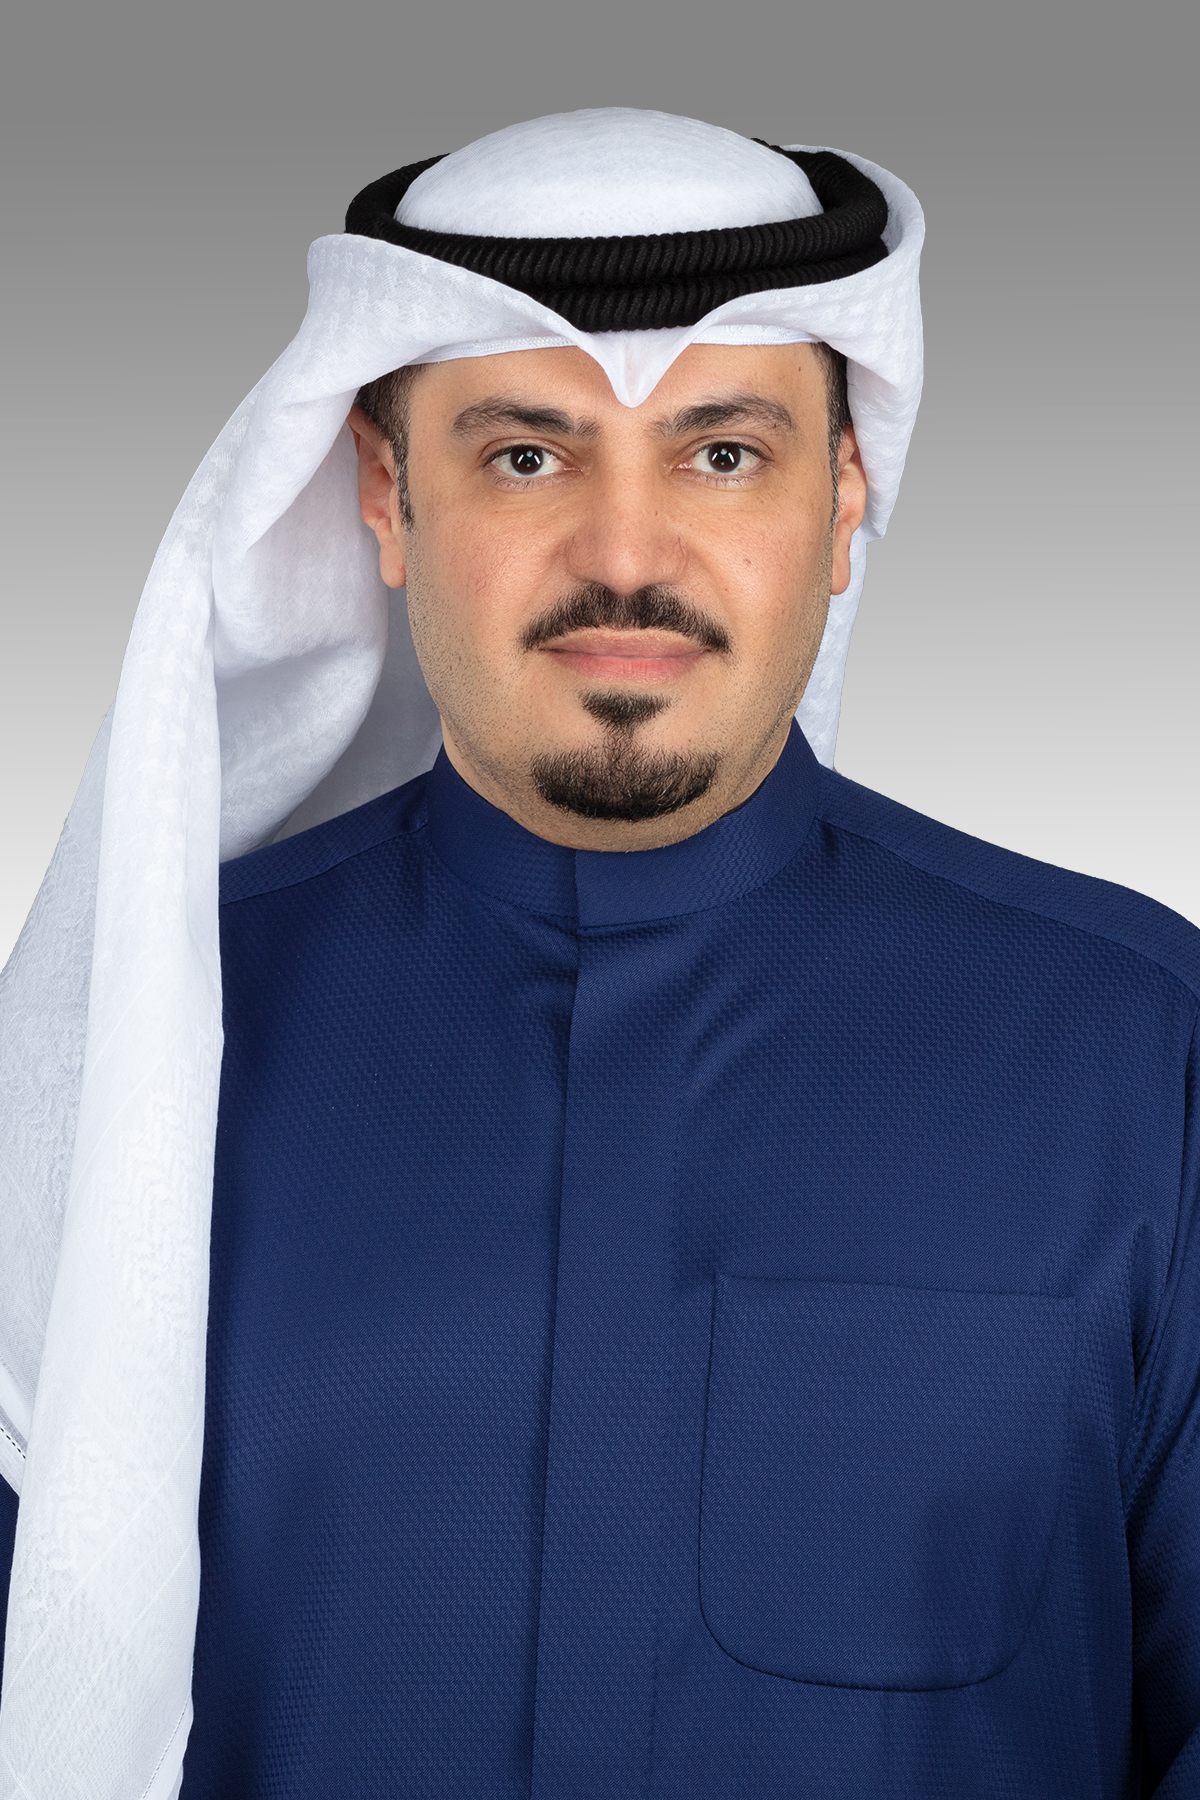 هشام الصالح يسأل وزير الدولة للشؤون الاقتصادية عن المستشارين القانونيين في ديوان الخدمة المدنية